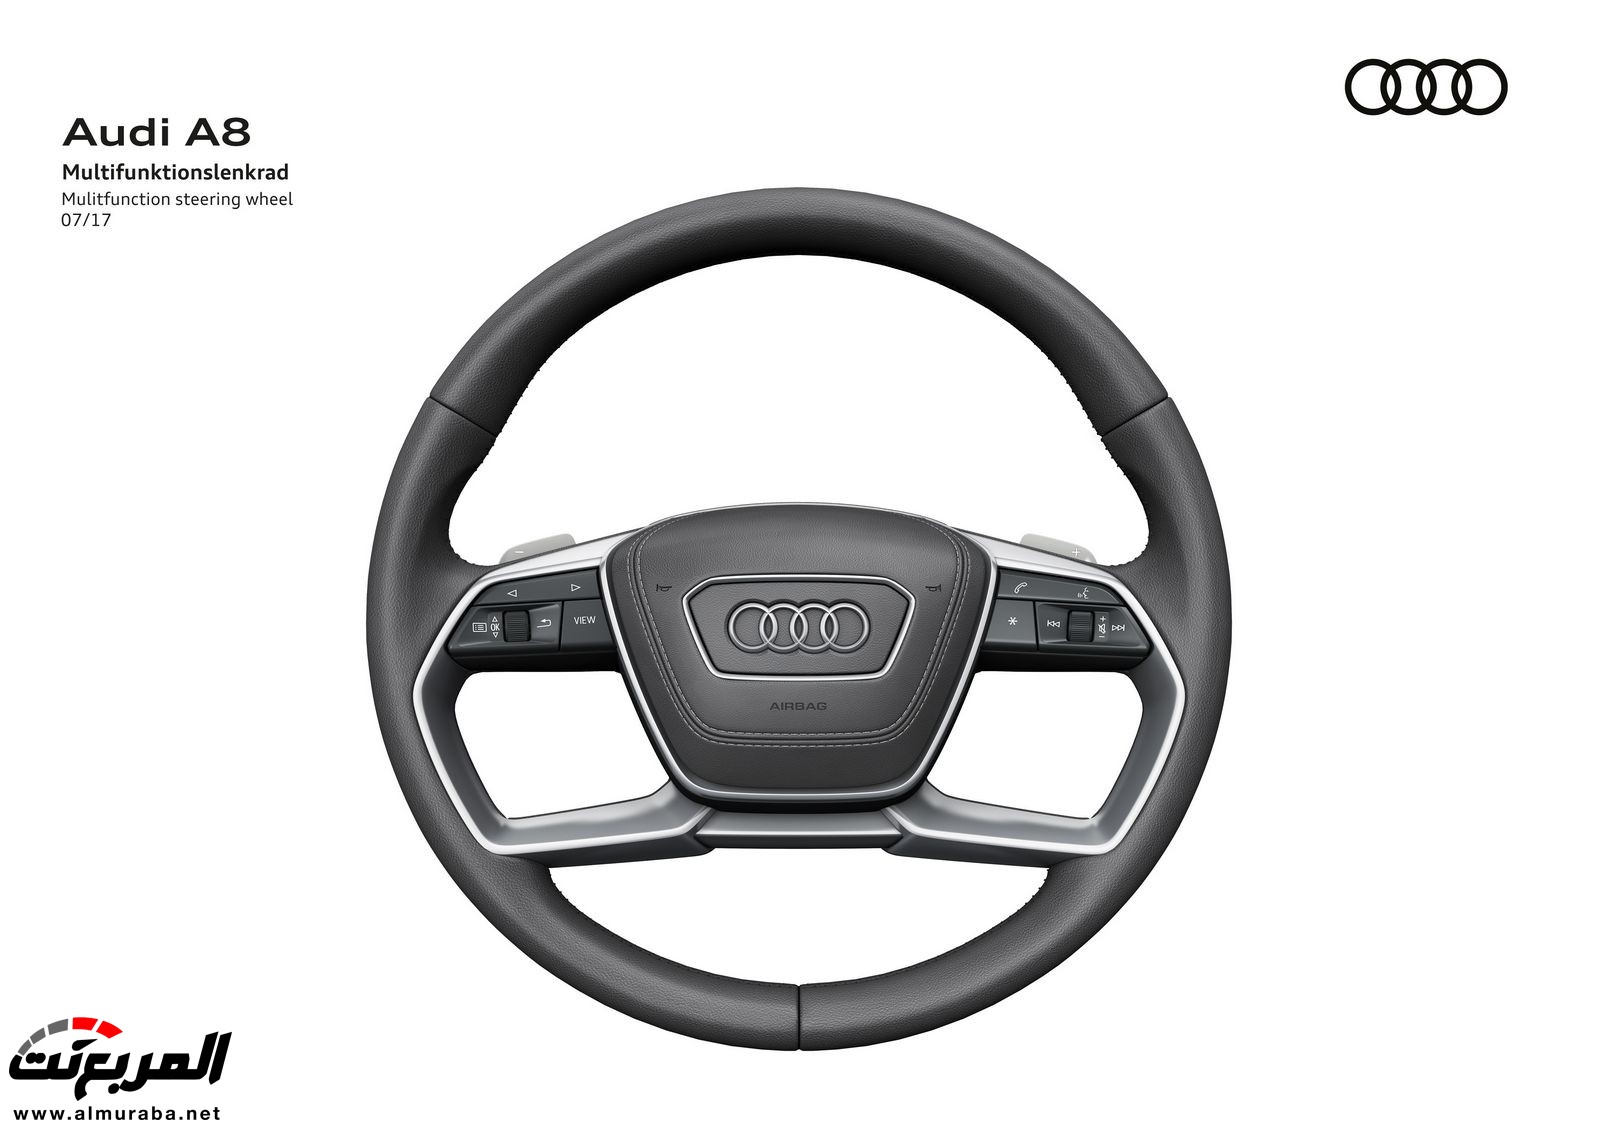 أودي A8 2018 الجديدة كلياً تكشف نفسها بتصميم وتقنيات متطورة "معلومات + 100 صورة" Audi A8 99